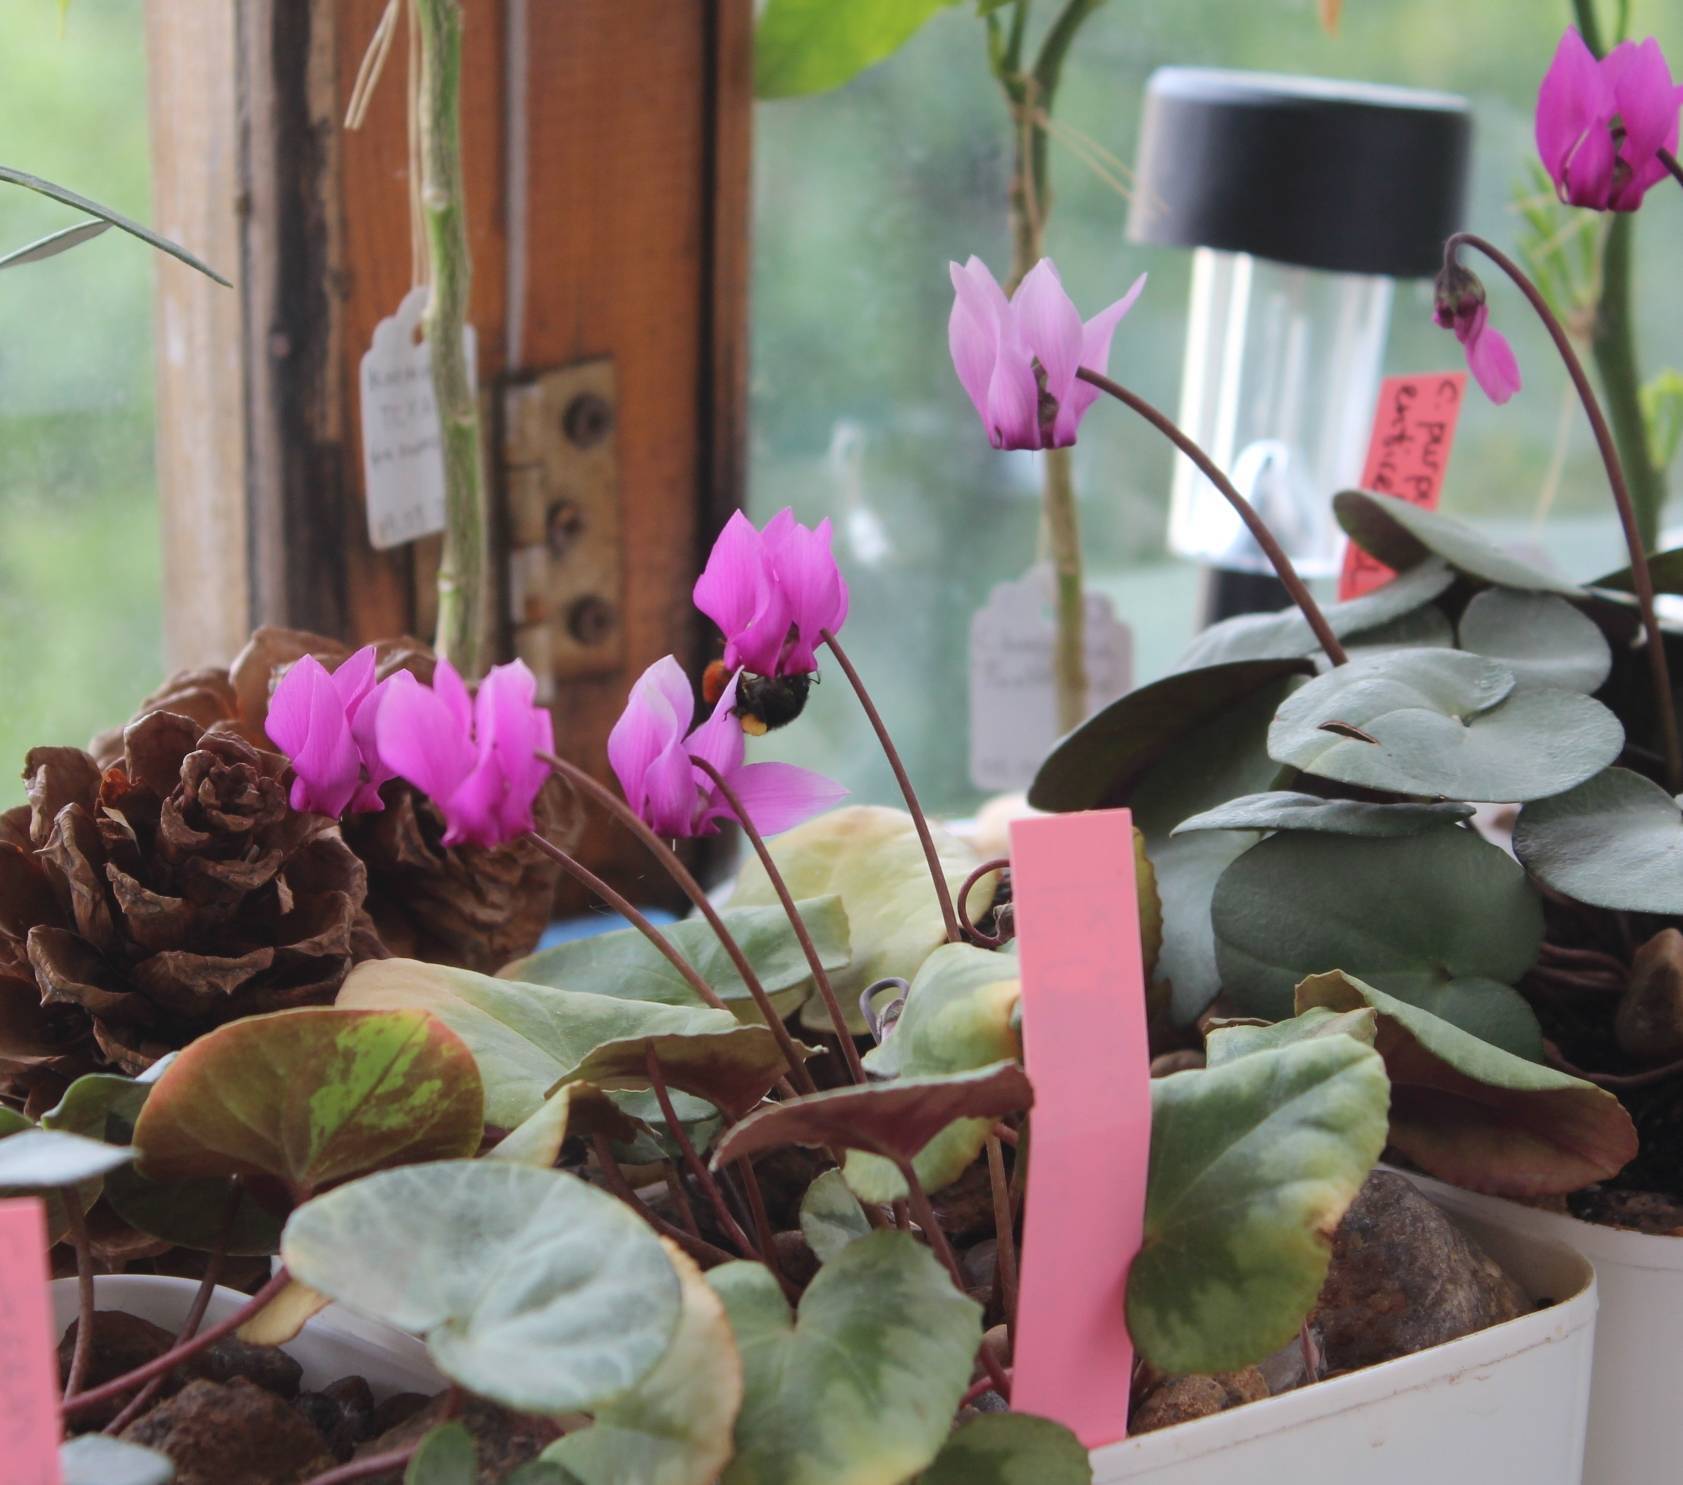 Альпийская фиалка (европейский цикламен): как называется это комнатное растение по-другому, а также фото и уход в домашних условиях за "бабушкиным" цветком